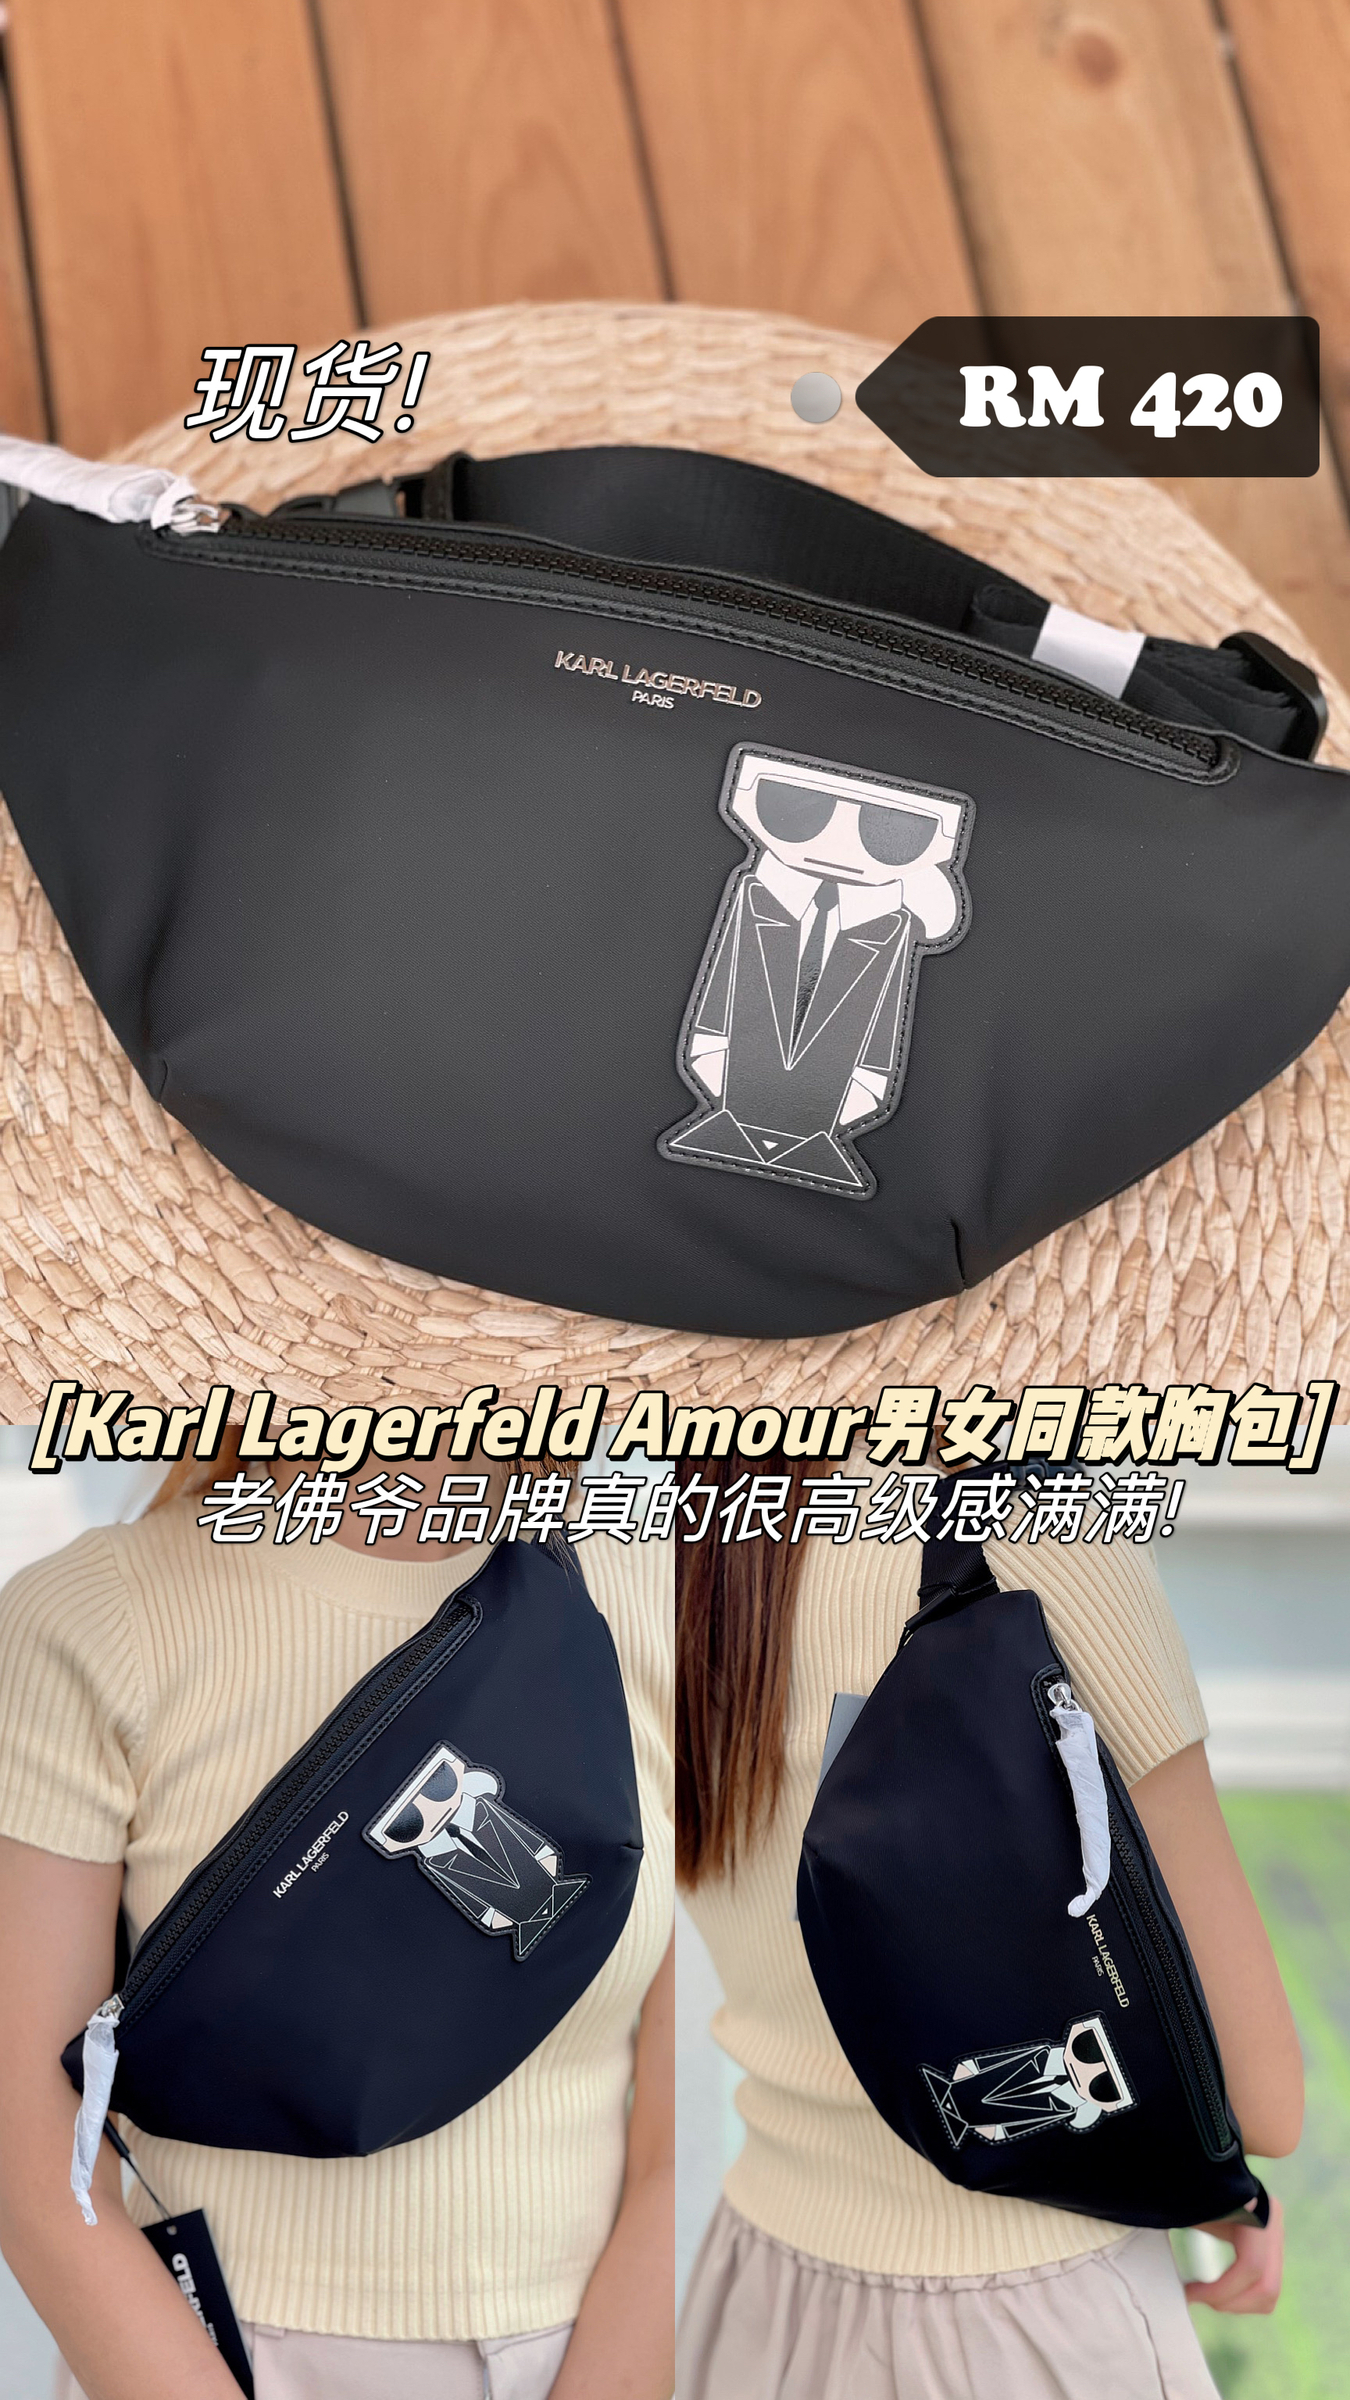 Karl Lagerfeld Amour Unisex Belt Bag – MoMo Girls